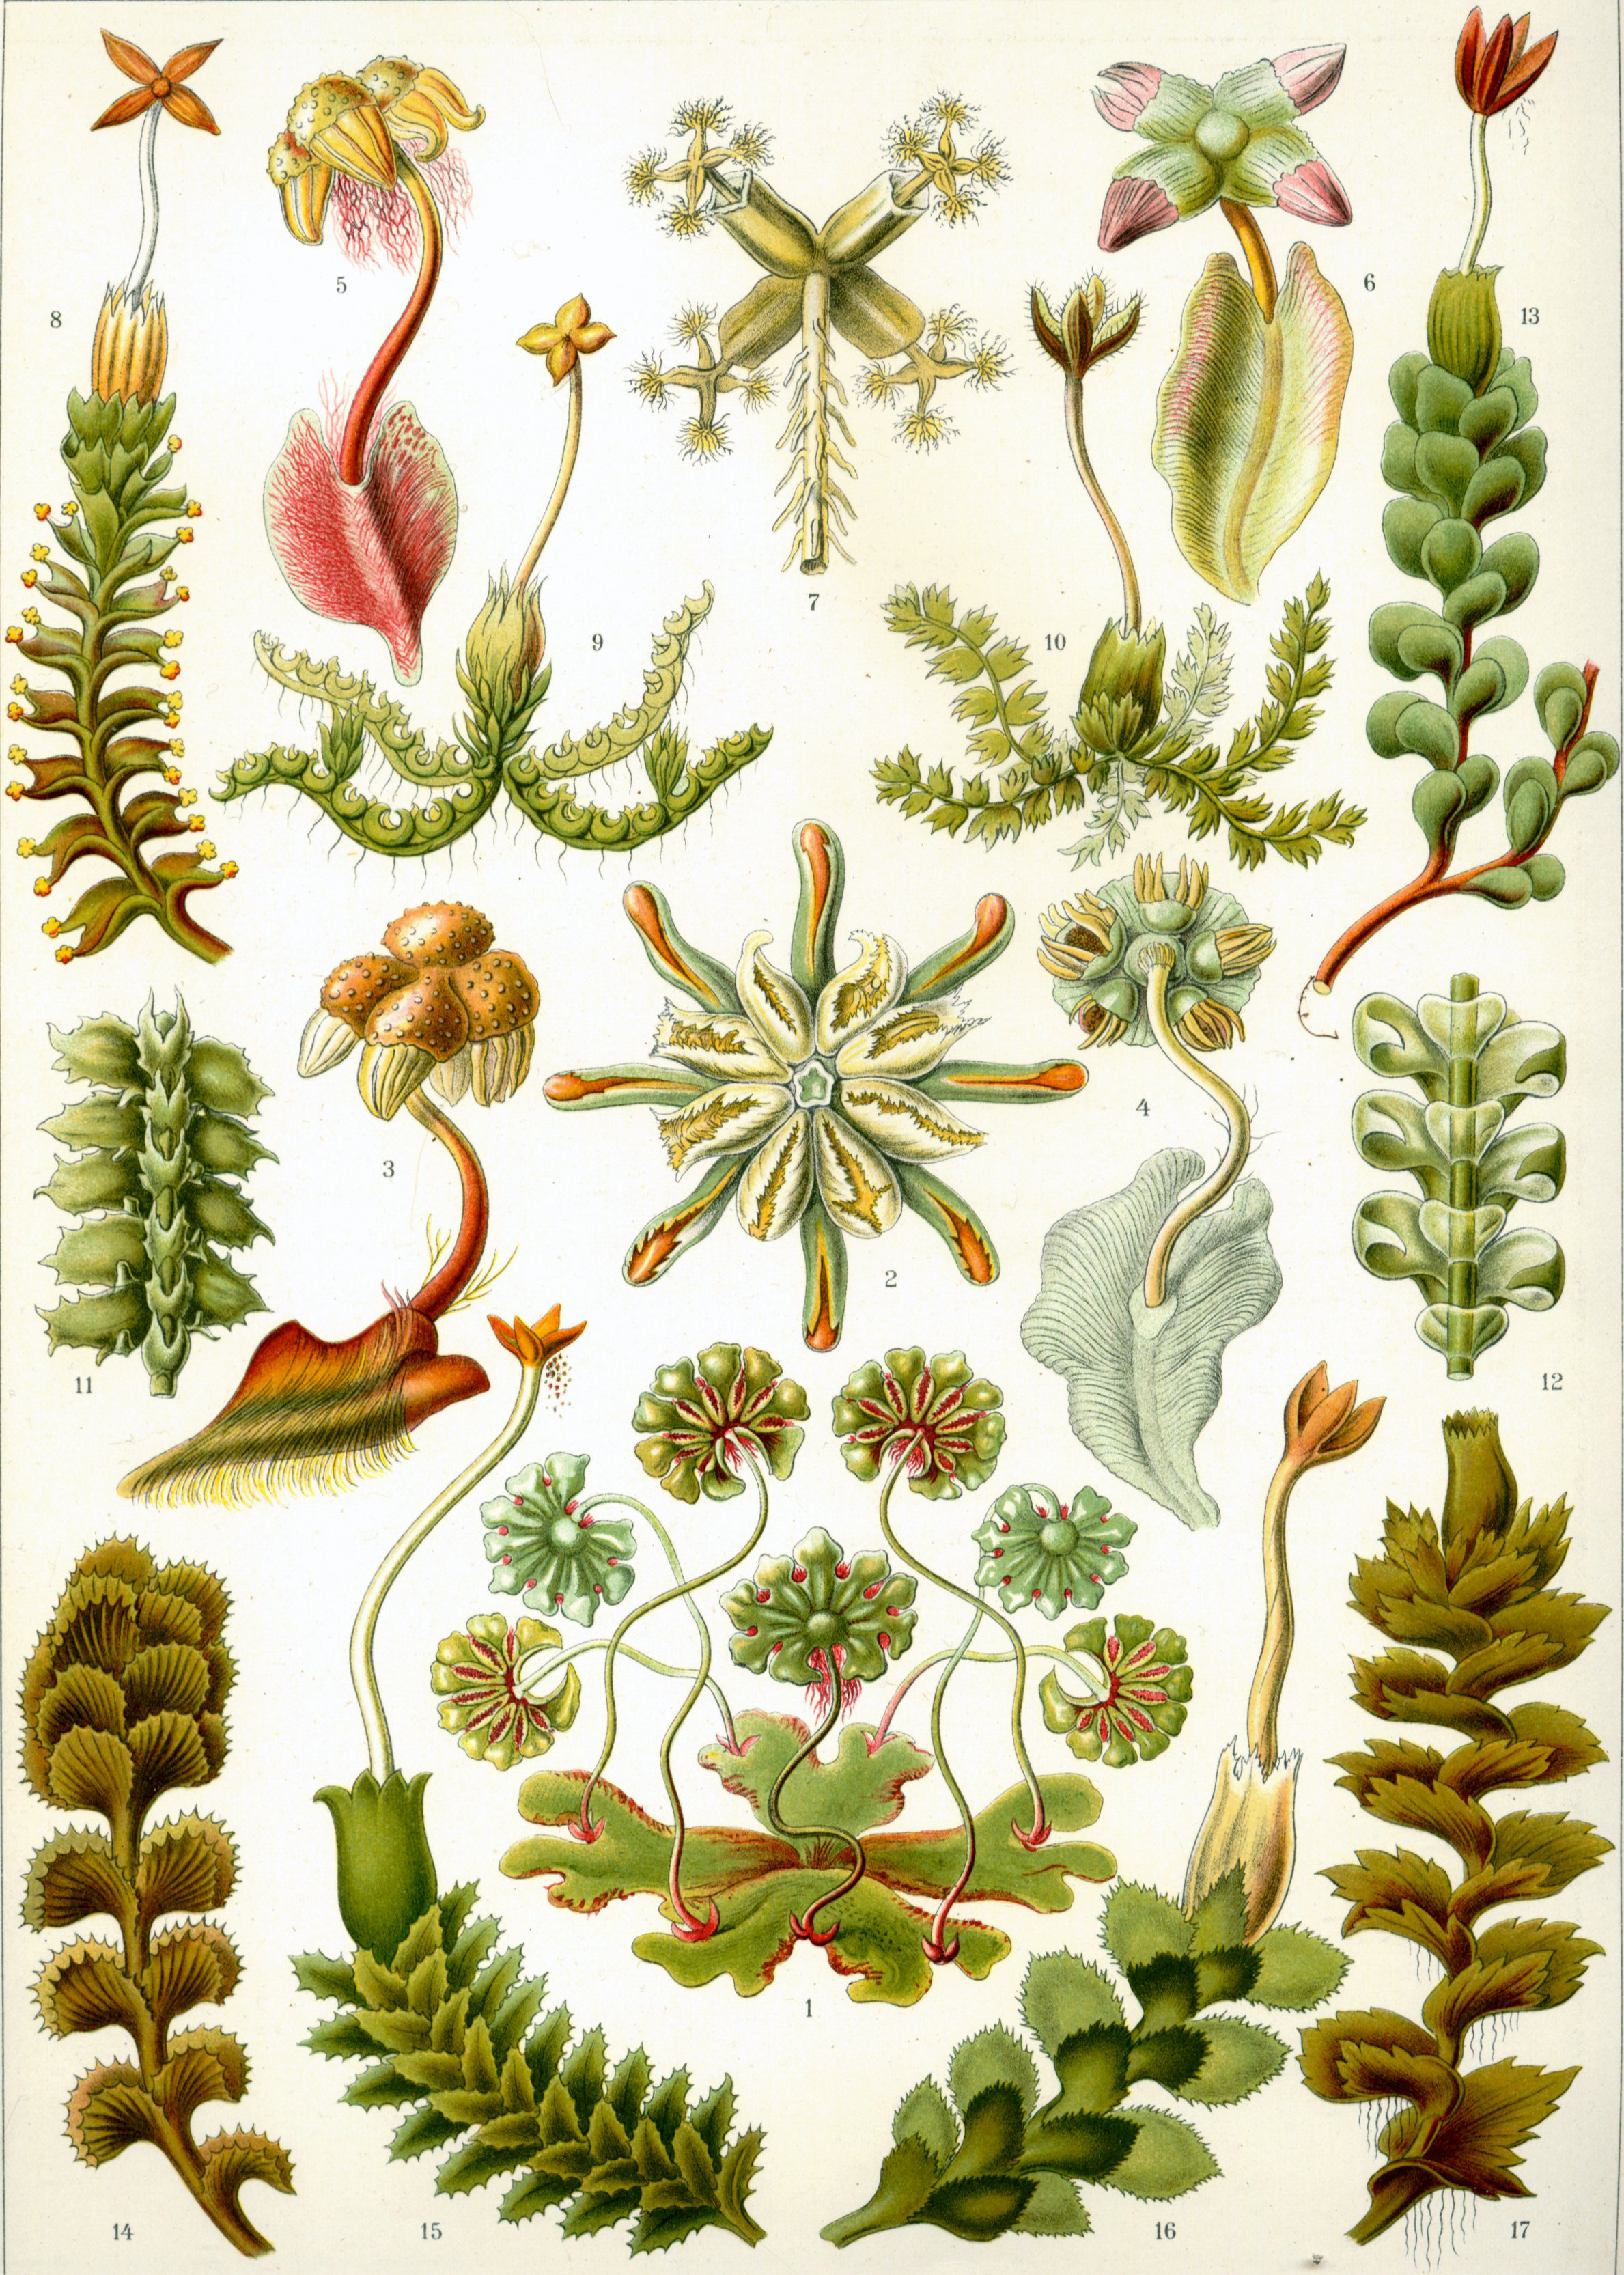 Liverworts from Ernst Haeckel’s Kunstformen der Natur, 1904.